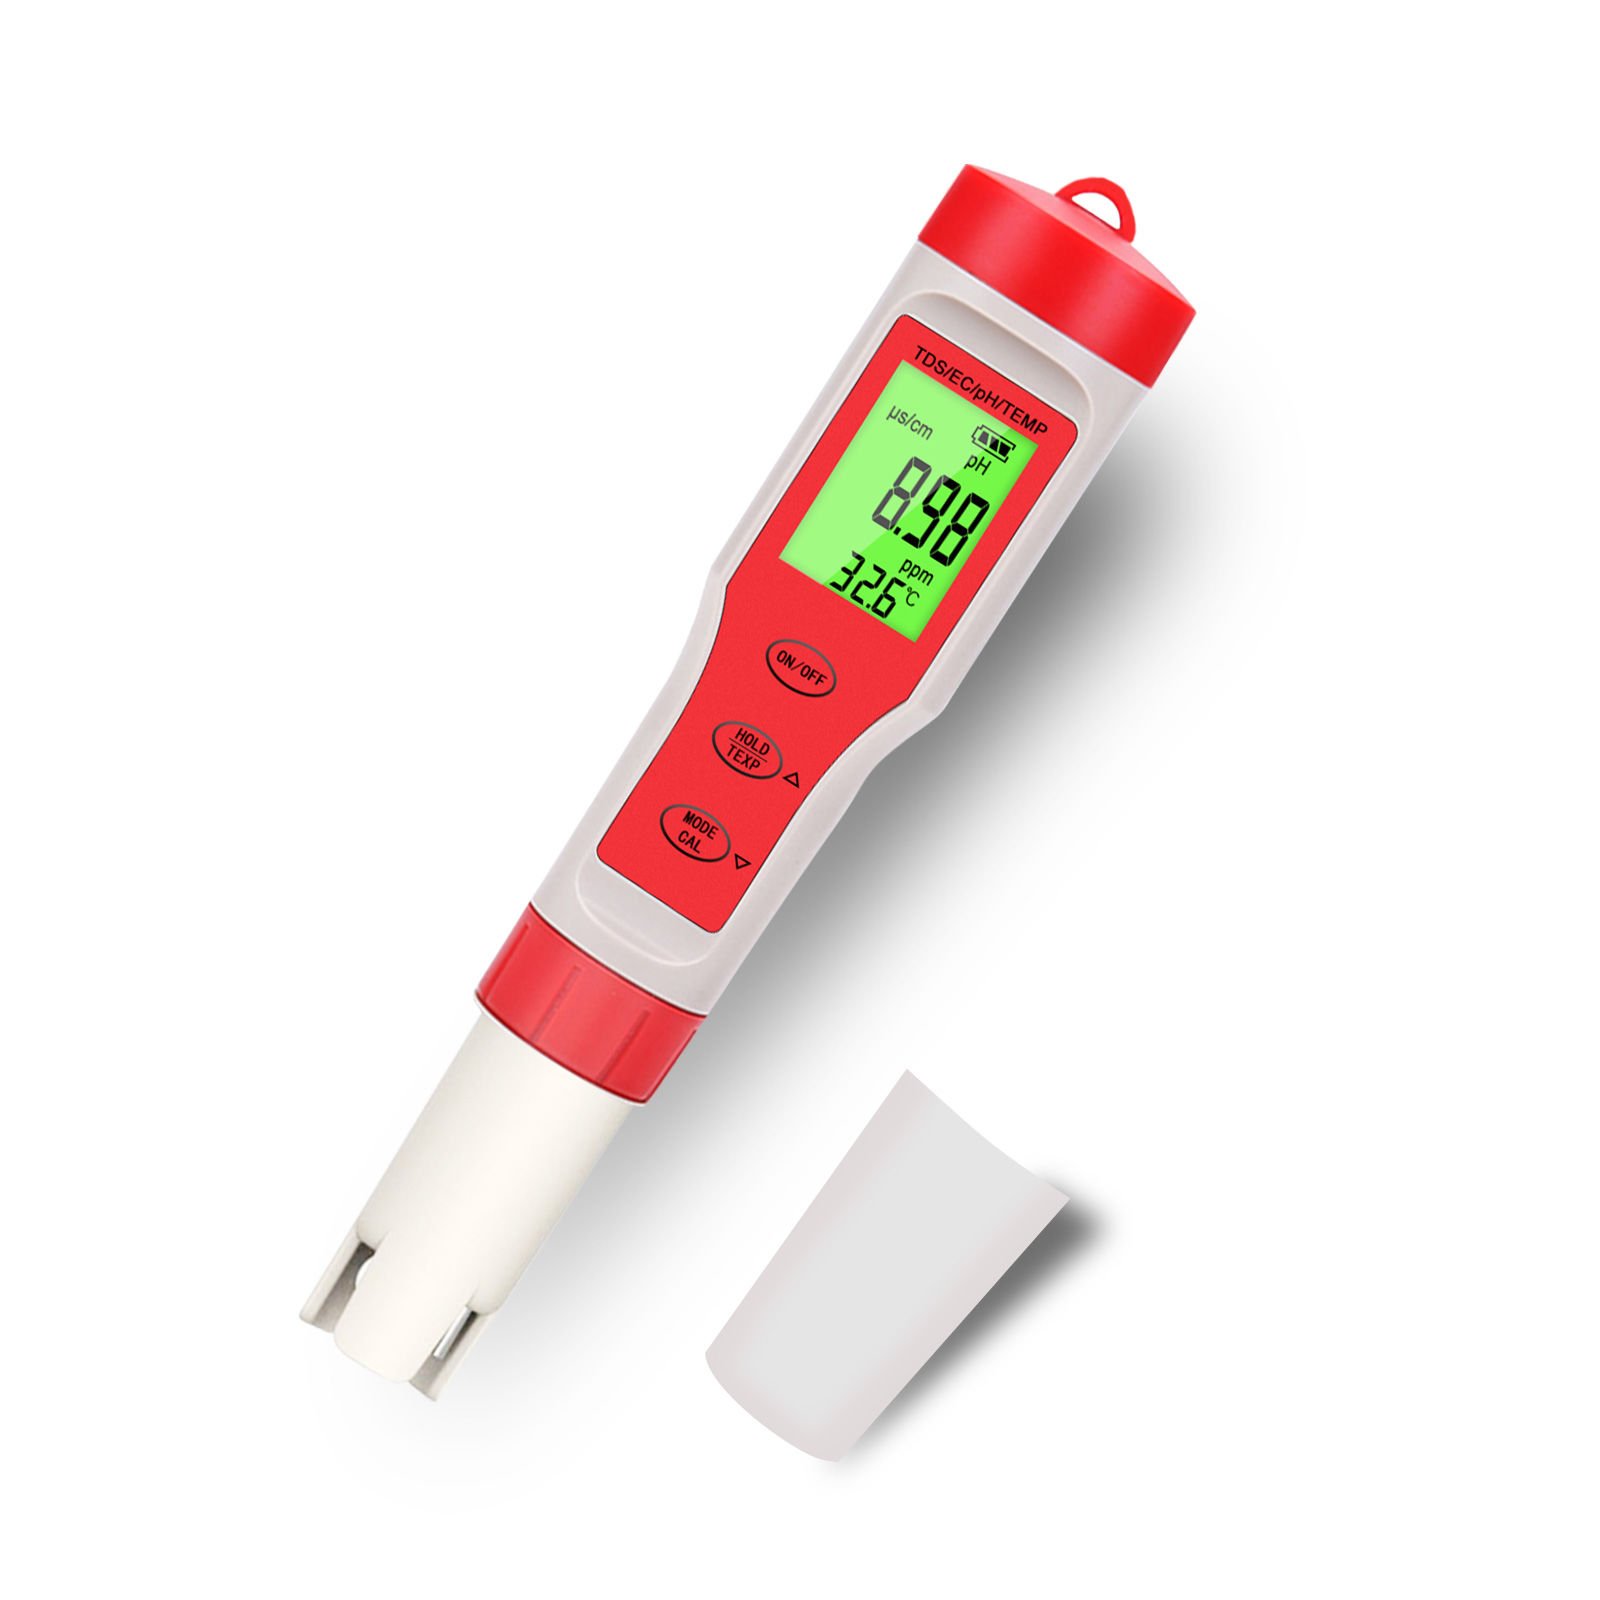 Ayt Noyafa EZ-9908 4 In 1 Su Kalite Test Cihazı Ph Sıcaklık Tds Ec Ölçer Ölçüm Cihazı Aleti